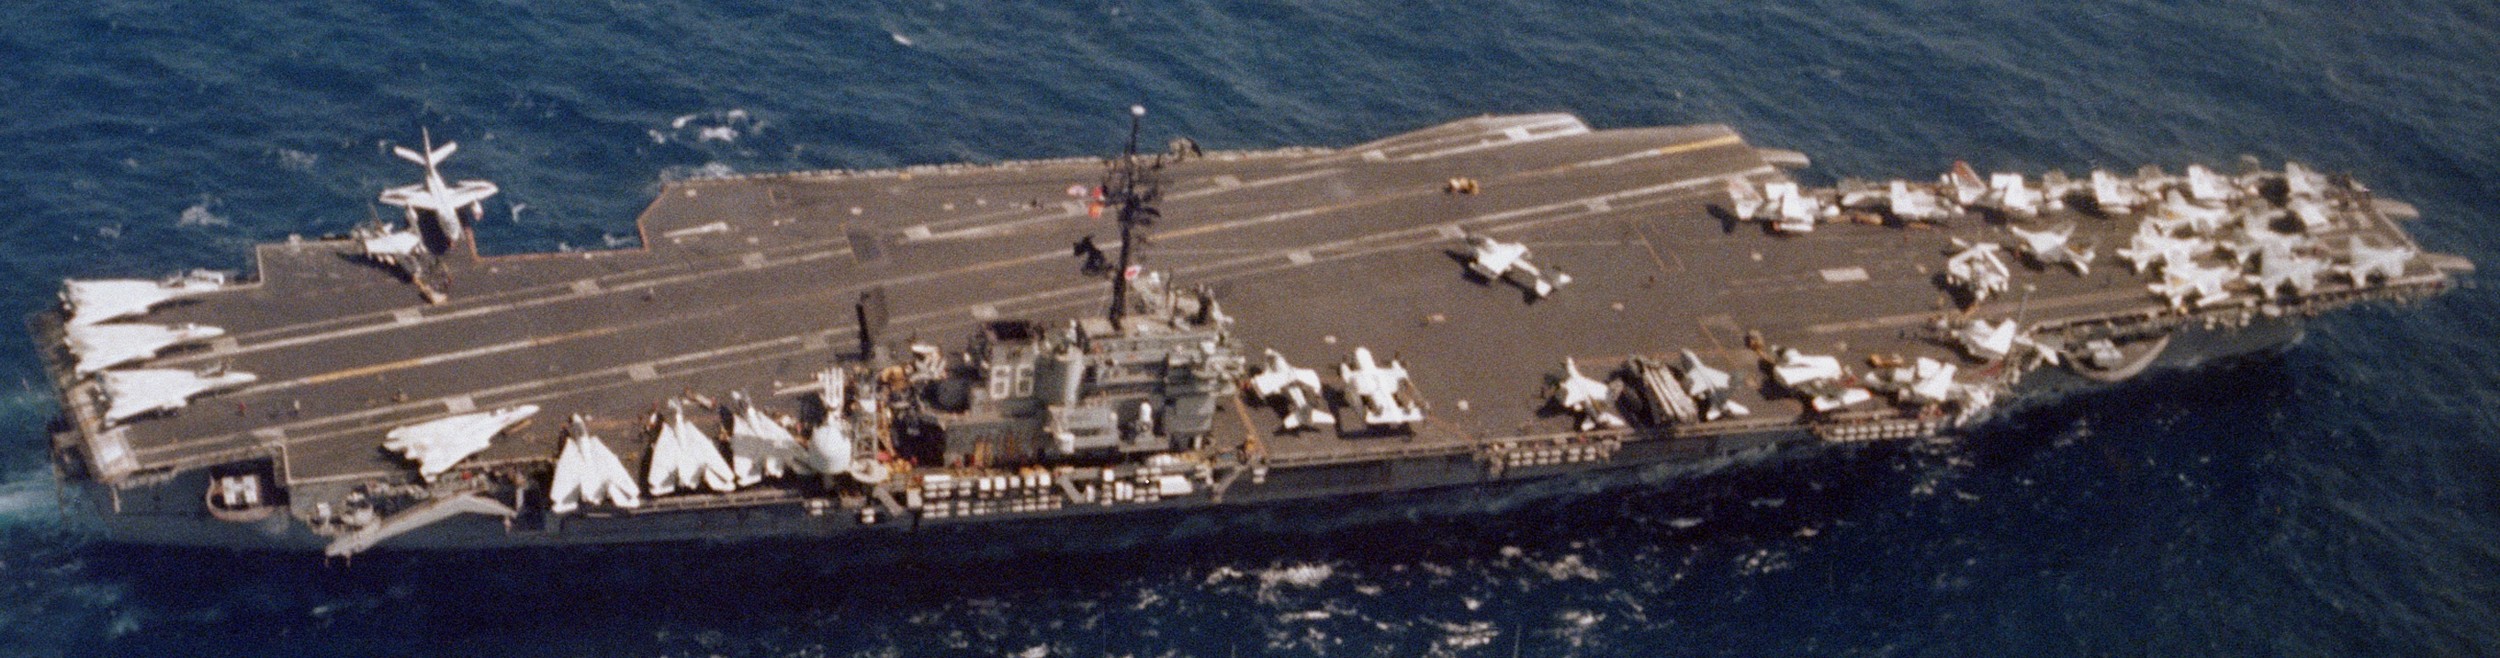 cv-66 uss america kitty hawk class aircraft carrier air wing cvw-11 us navy 40